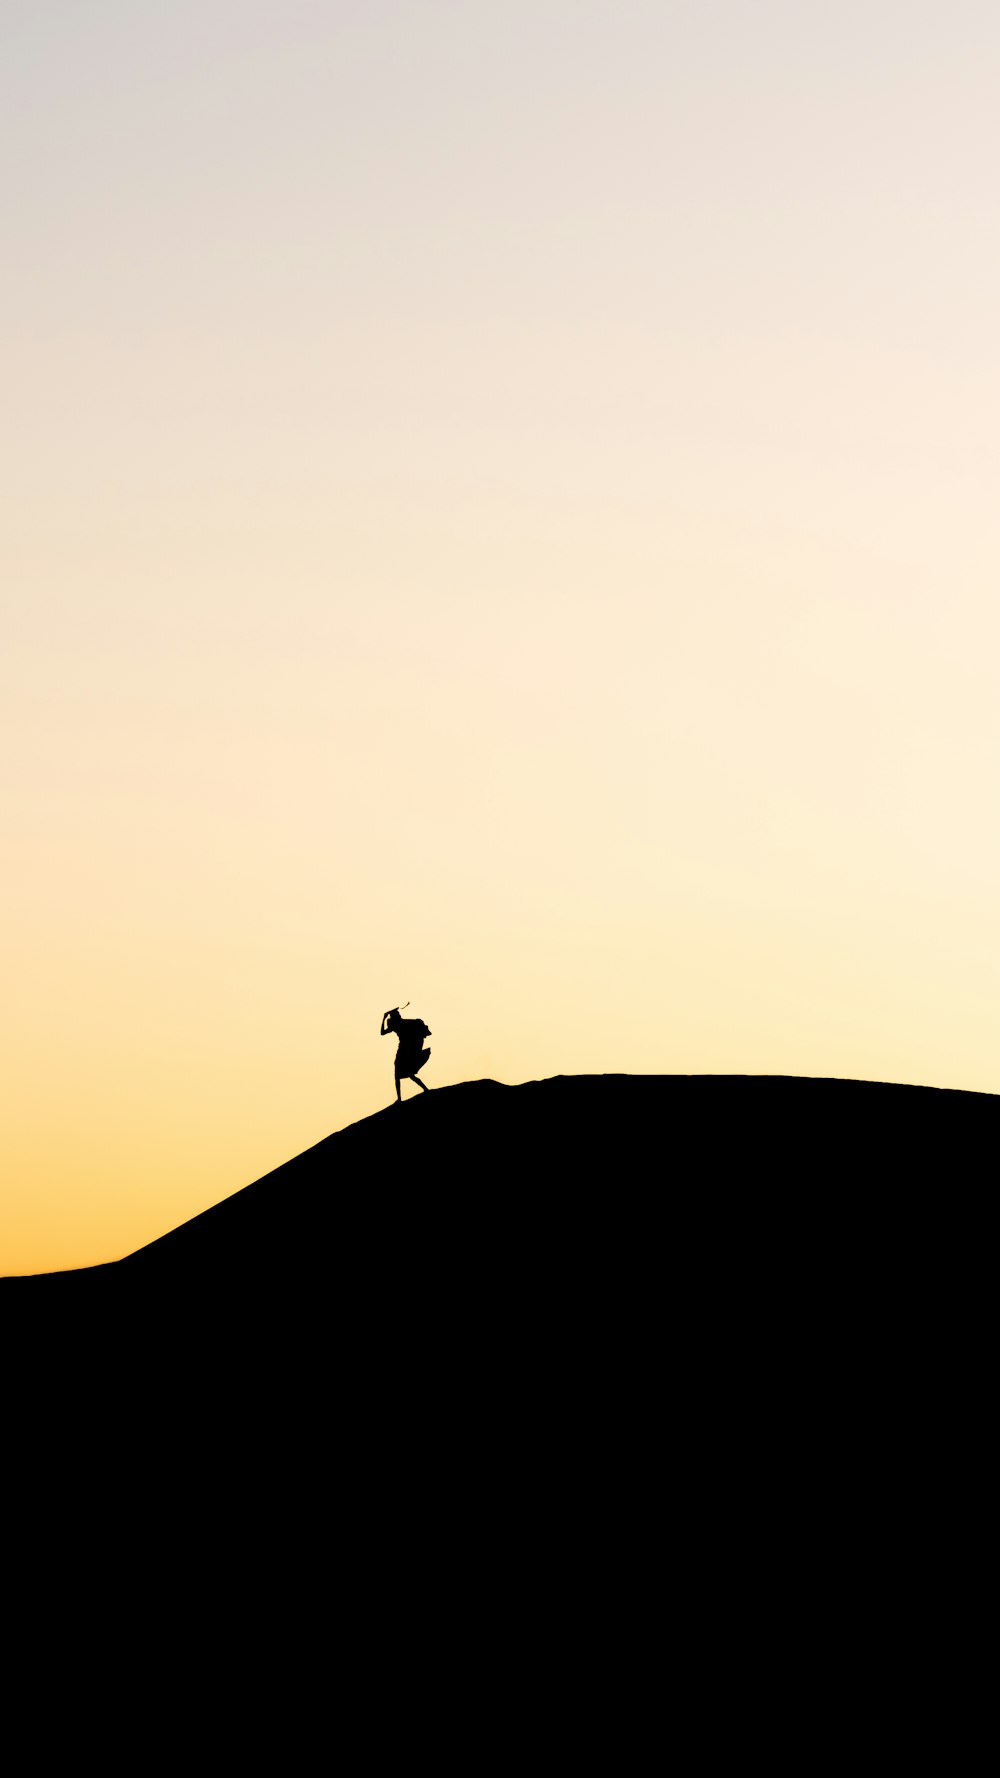 una silhouette di una persona in piedi sulla cima di una collina